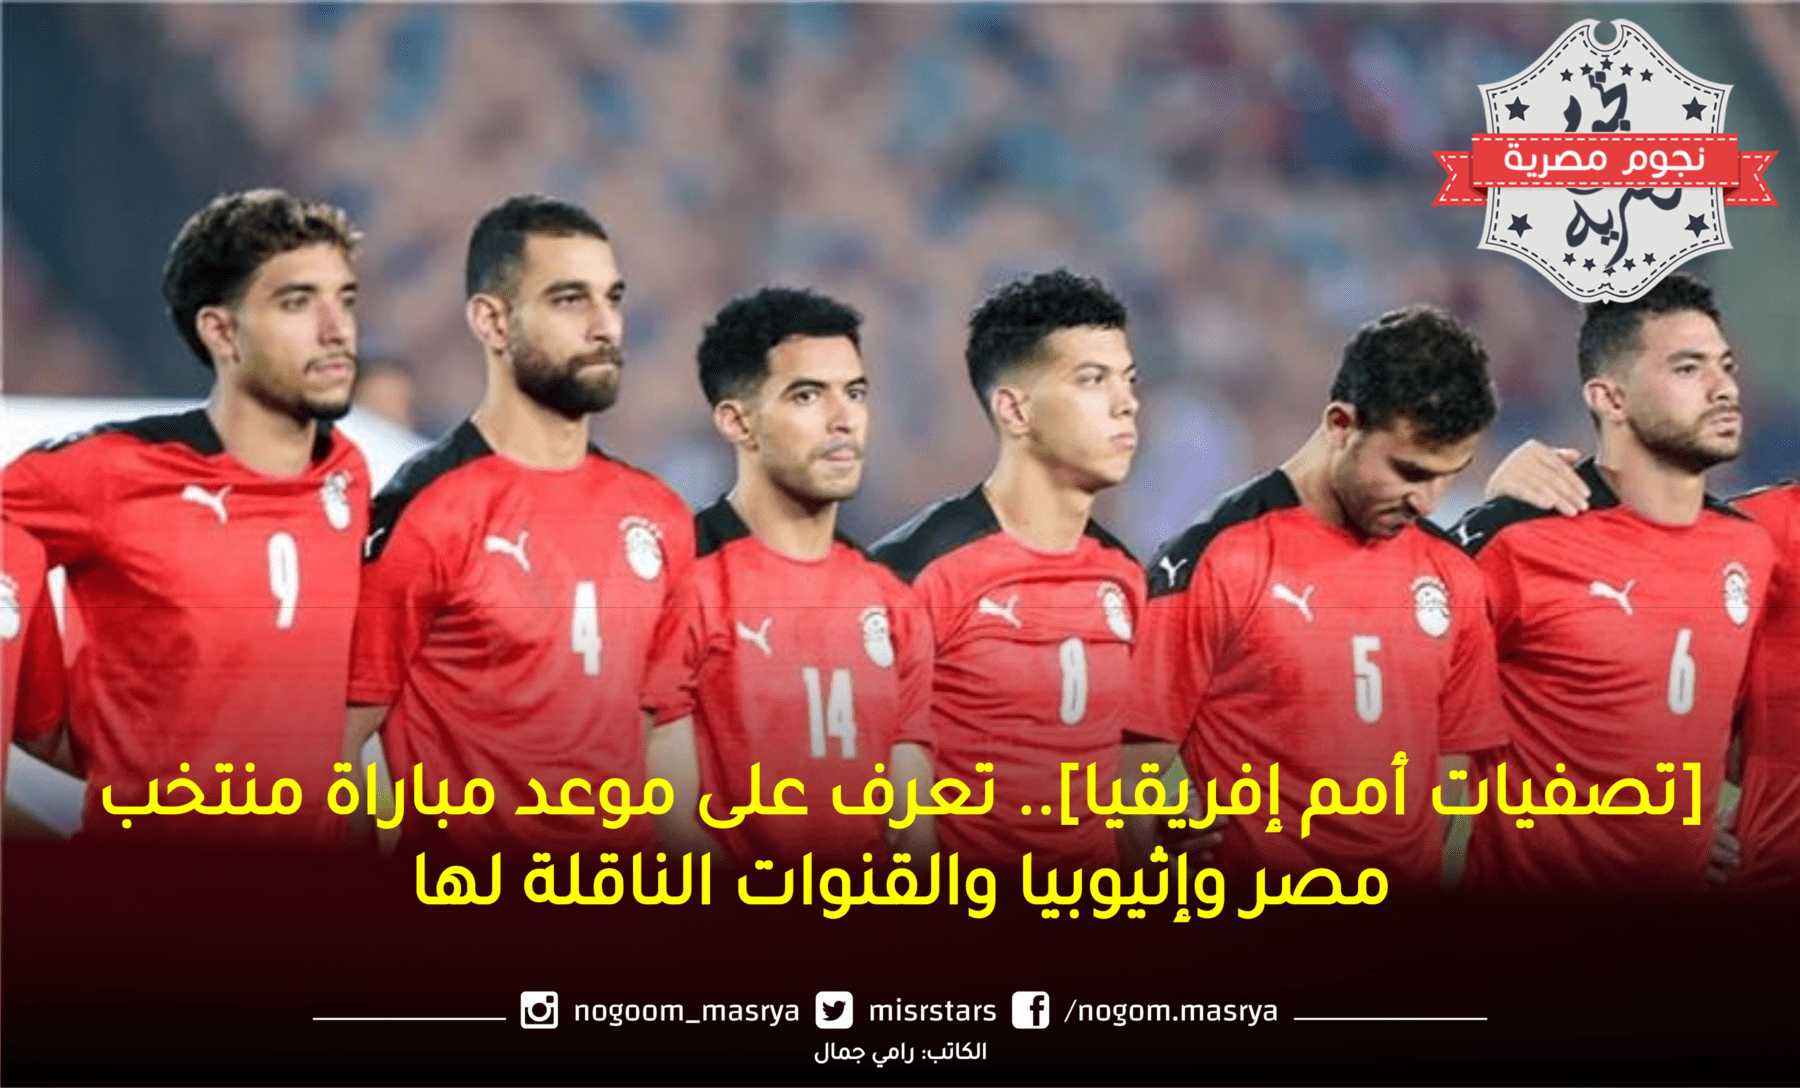 صورة تجمع لاعبي منتخب مصر لكرة القدم بإحدى المباريات _ المصدر: موقع btolat